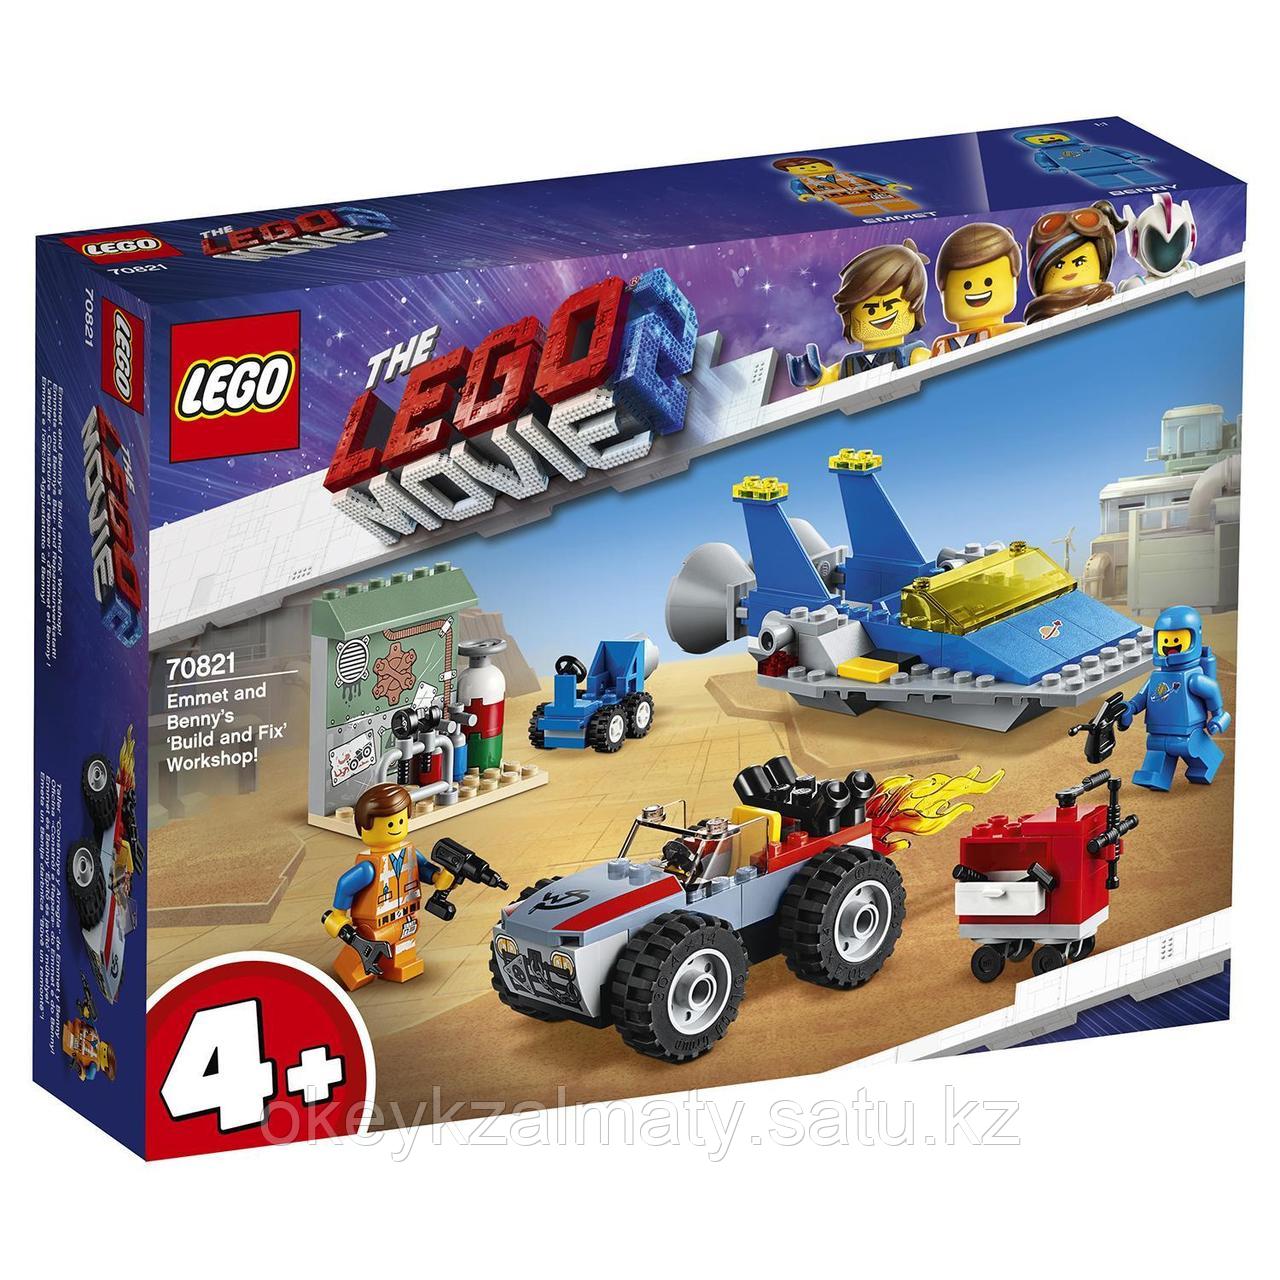 LEGO Movie: Мастерская Строим и чиним Эммета и Бенни 70821